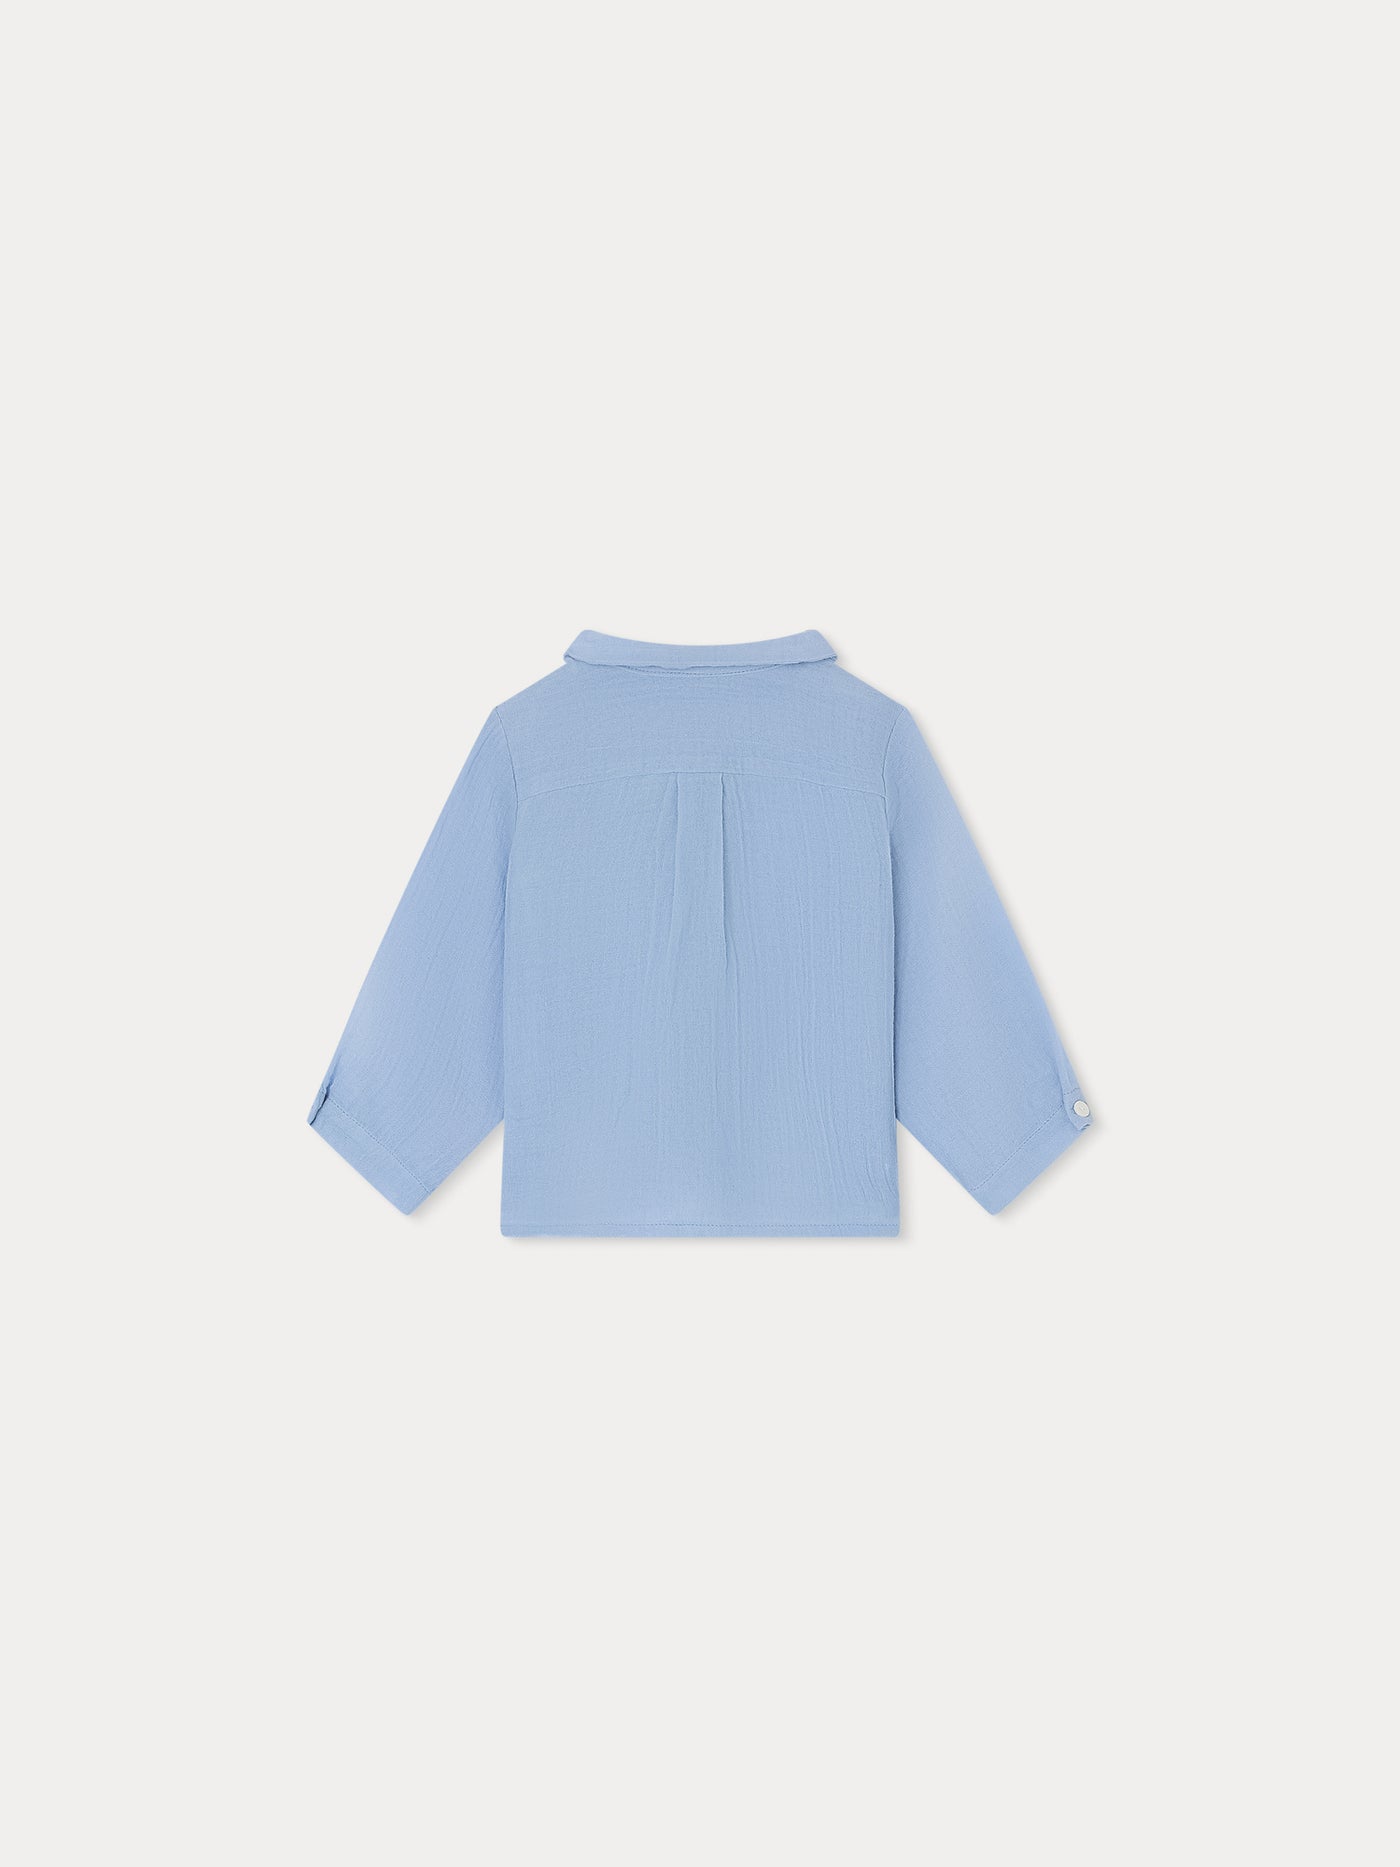 Boubou Shirt blue grey